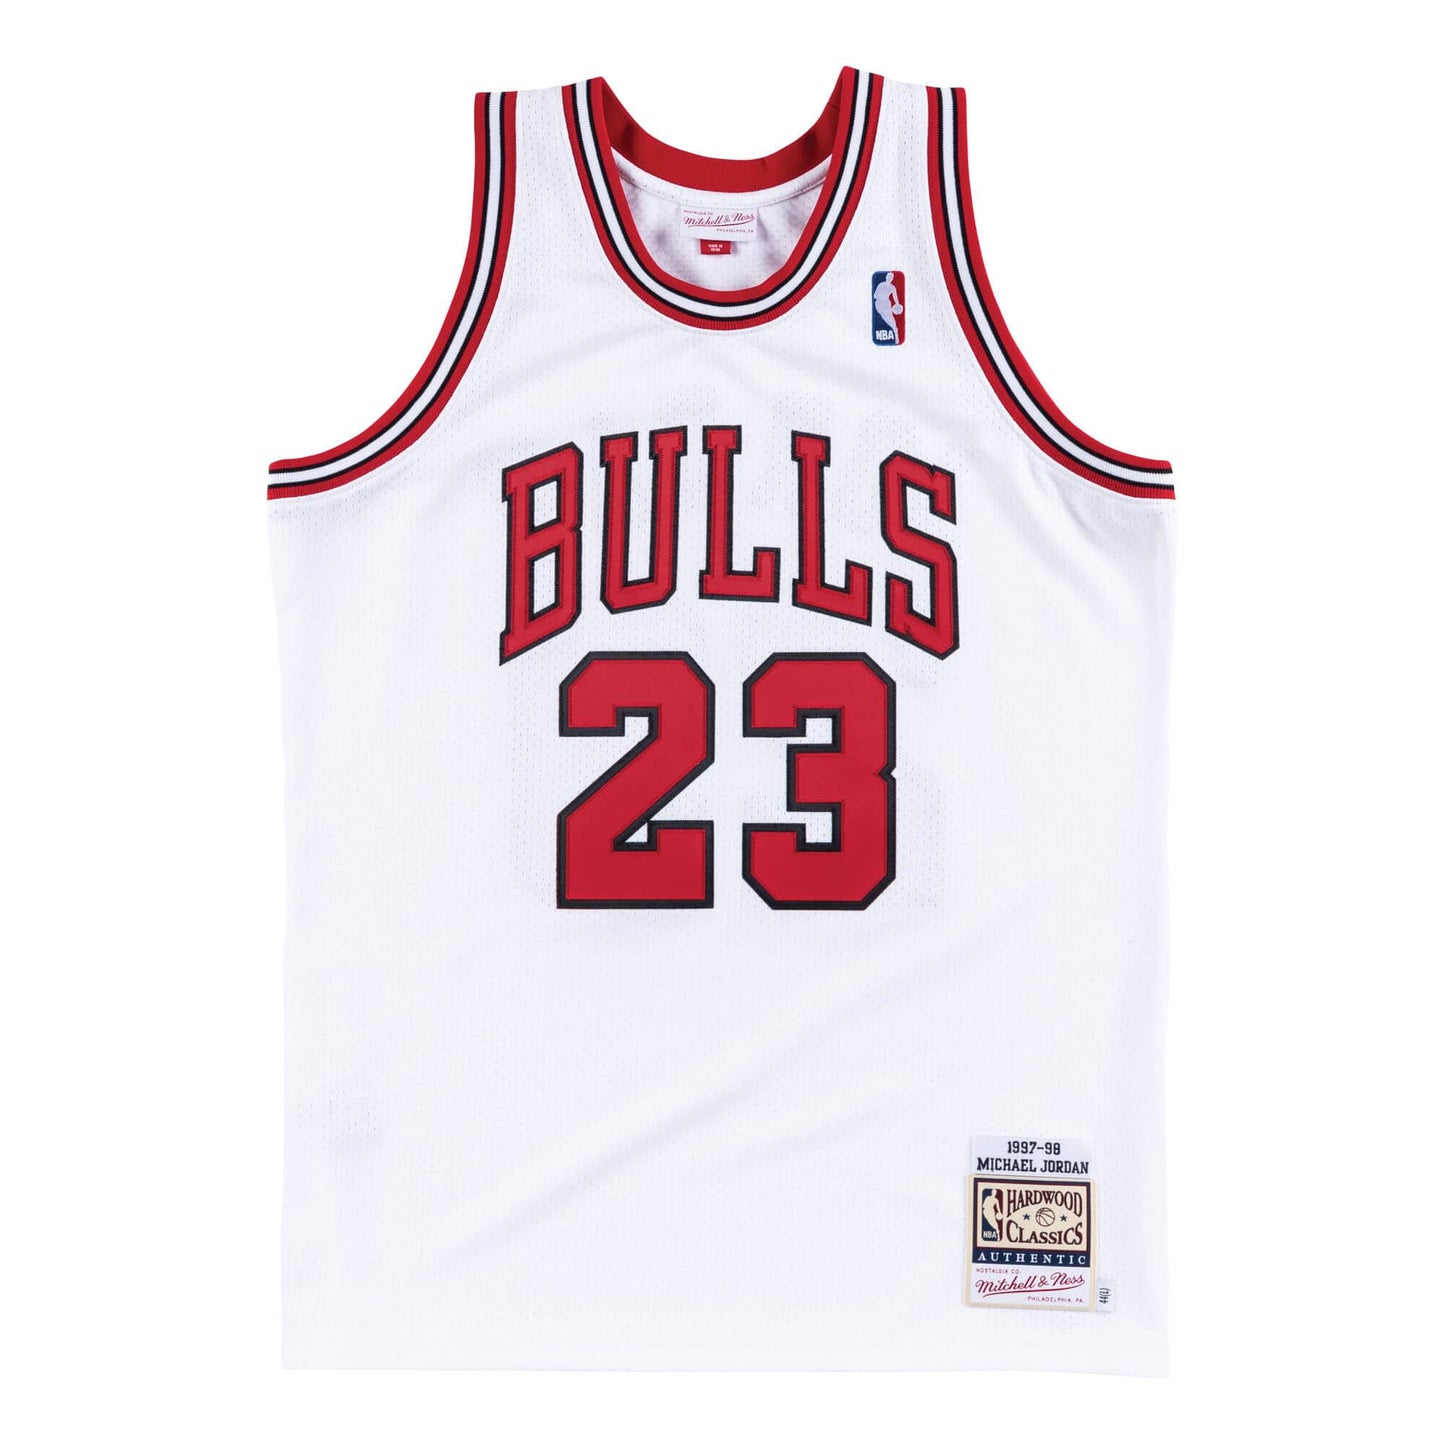 Authentic Jersey Chicago Bulls Home 1997-98 Michael Jordans